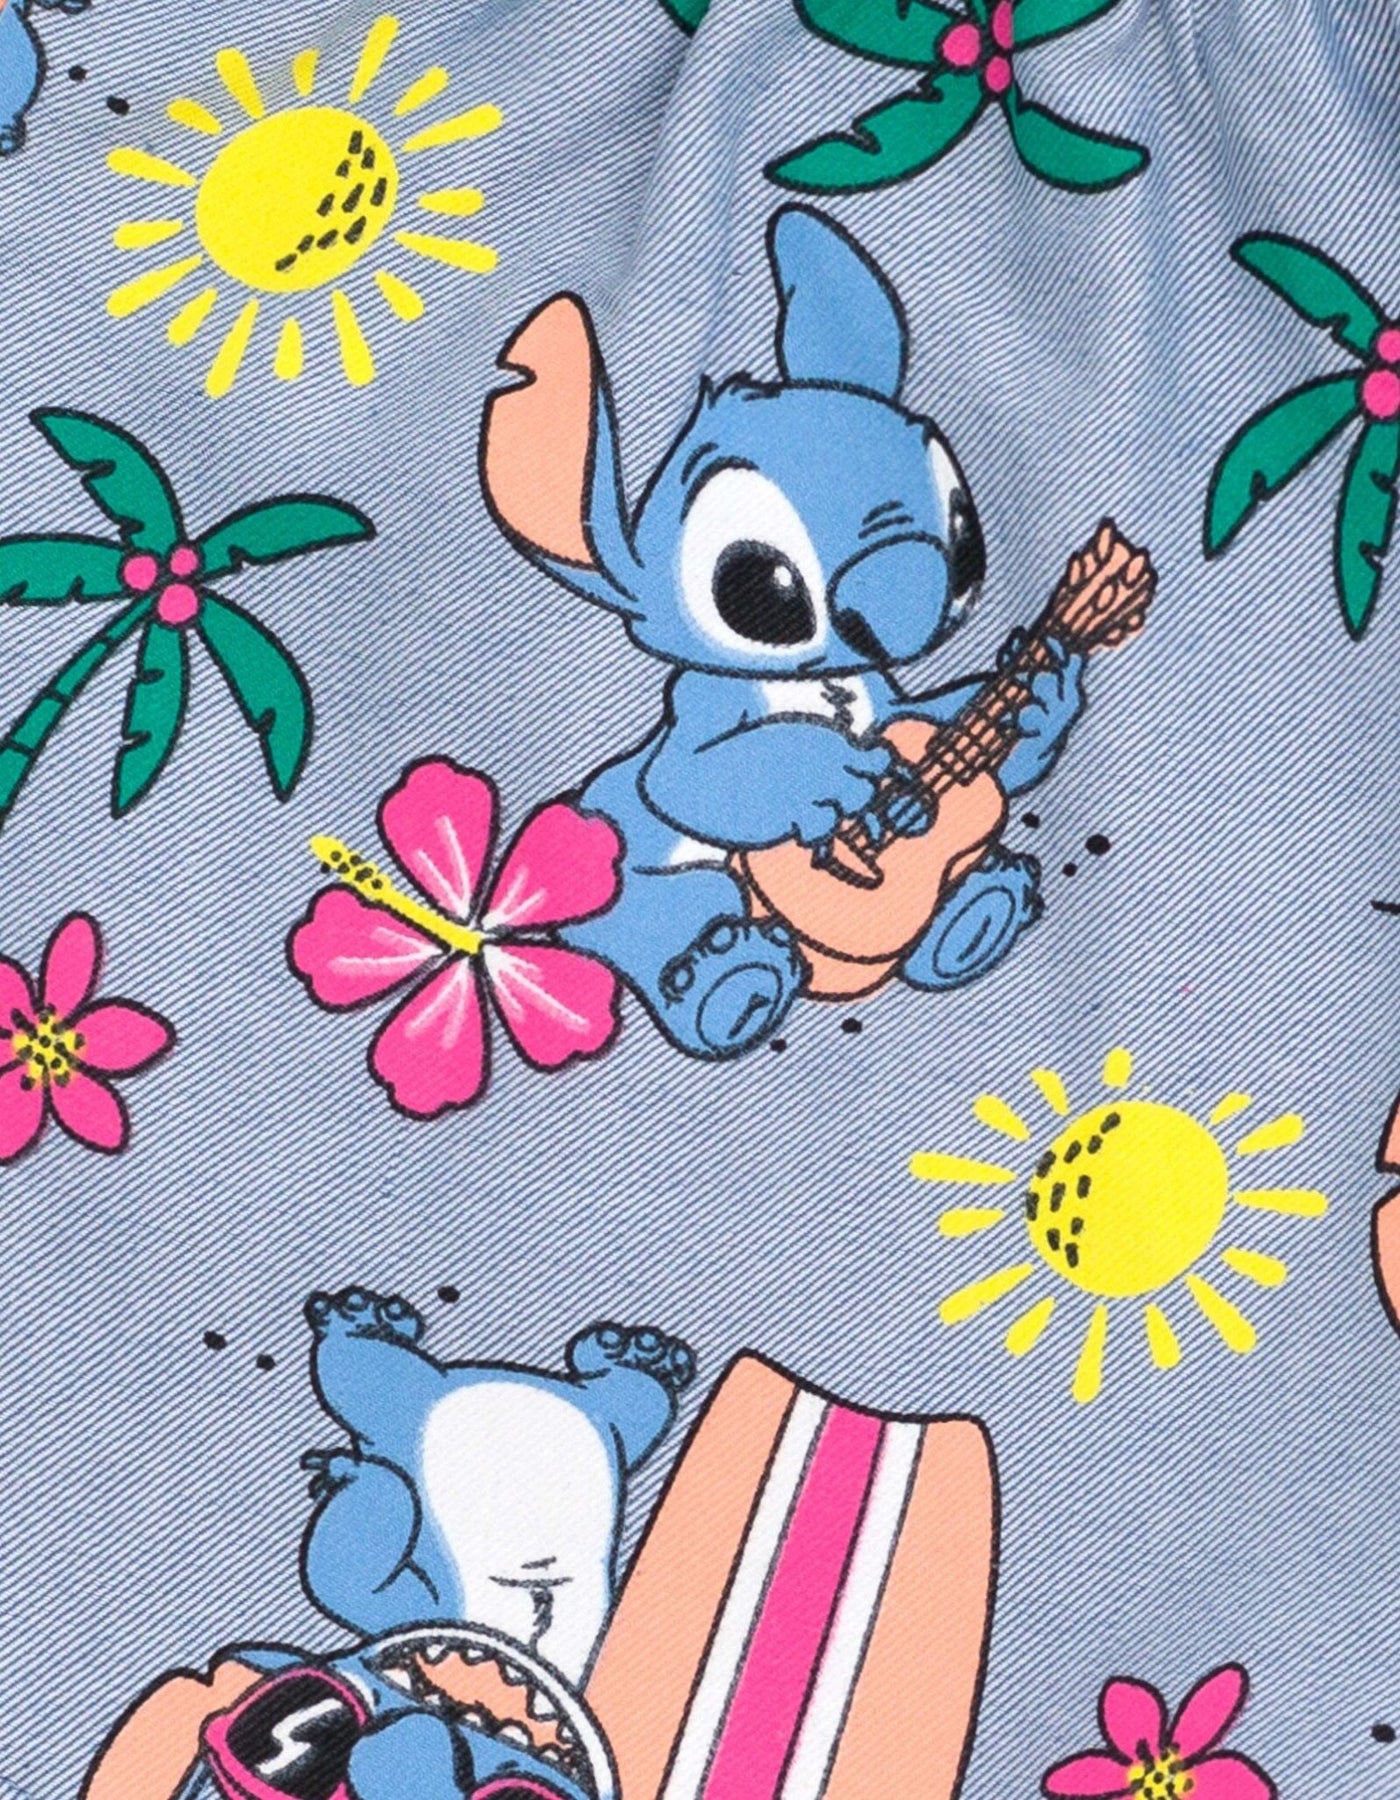 Disney Lilo & Stitch Stitch T-Shirt and Chambray Shorts Outfit Set - imagikids